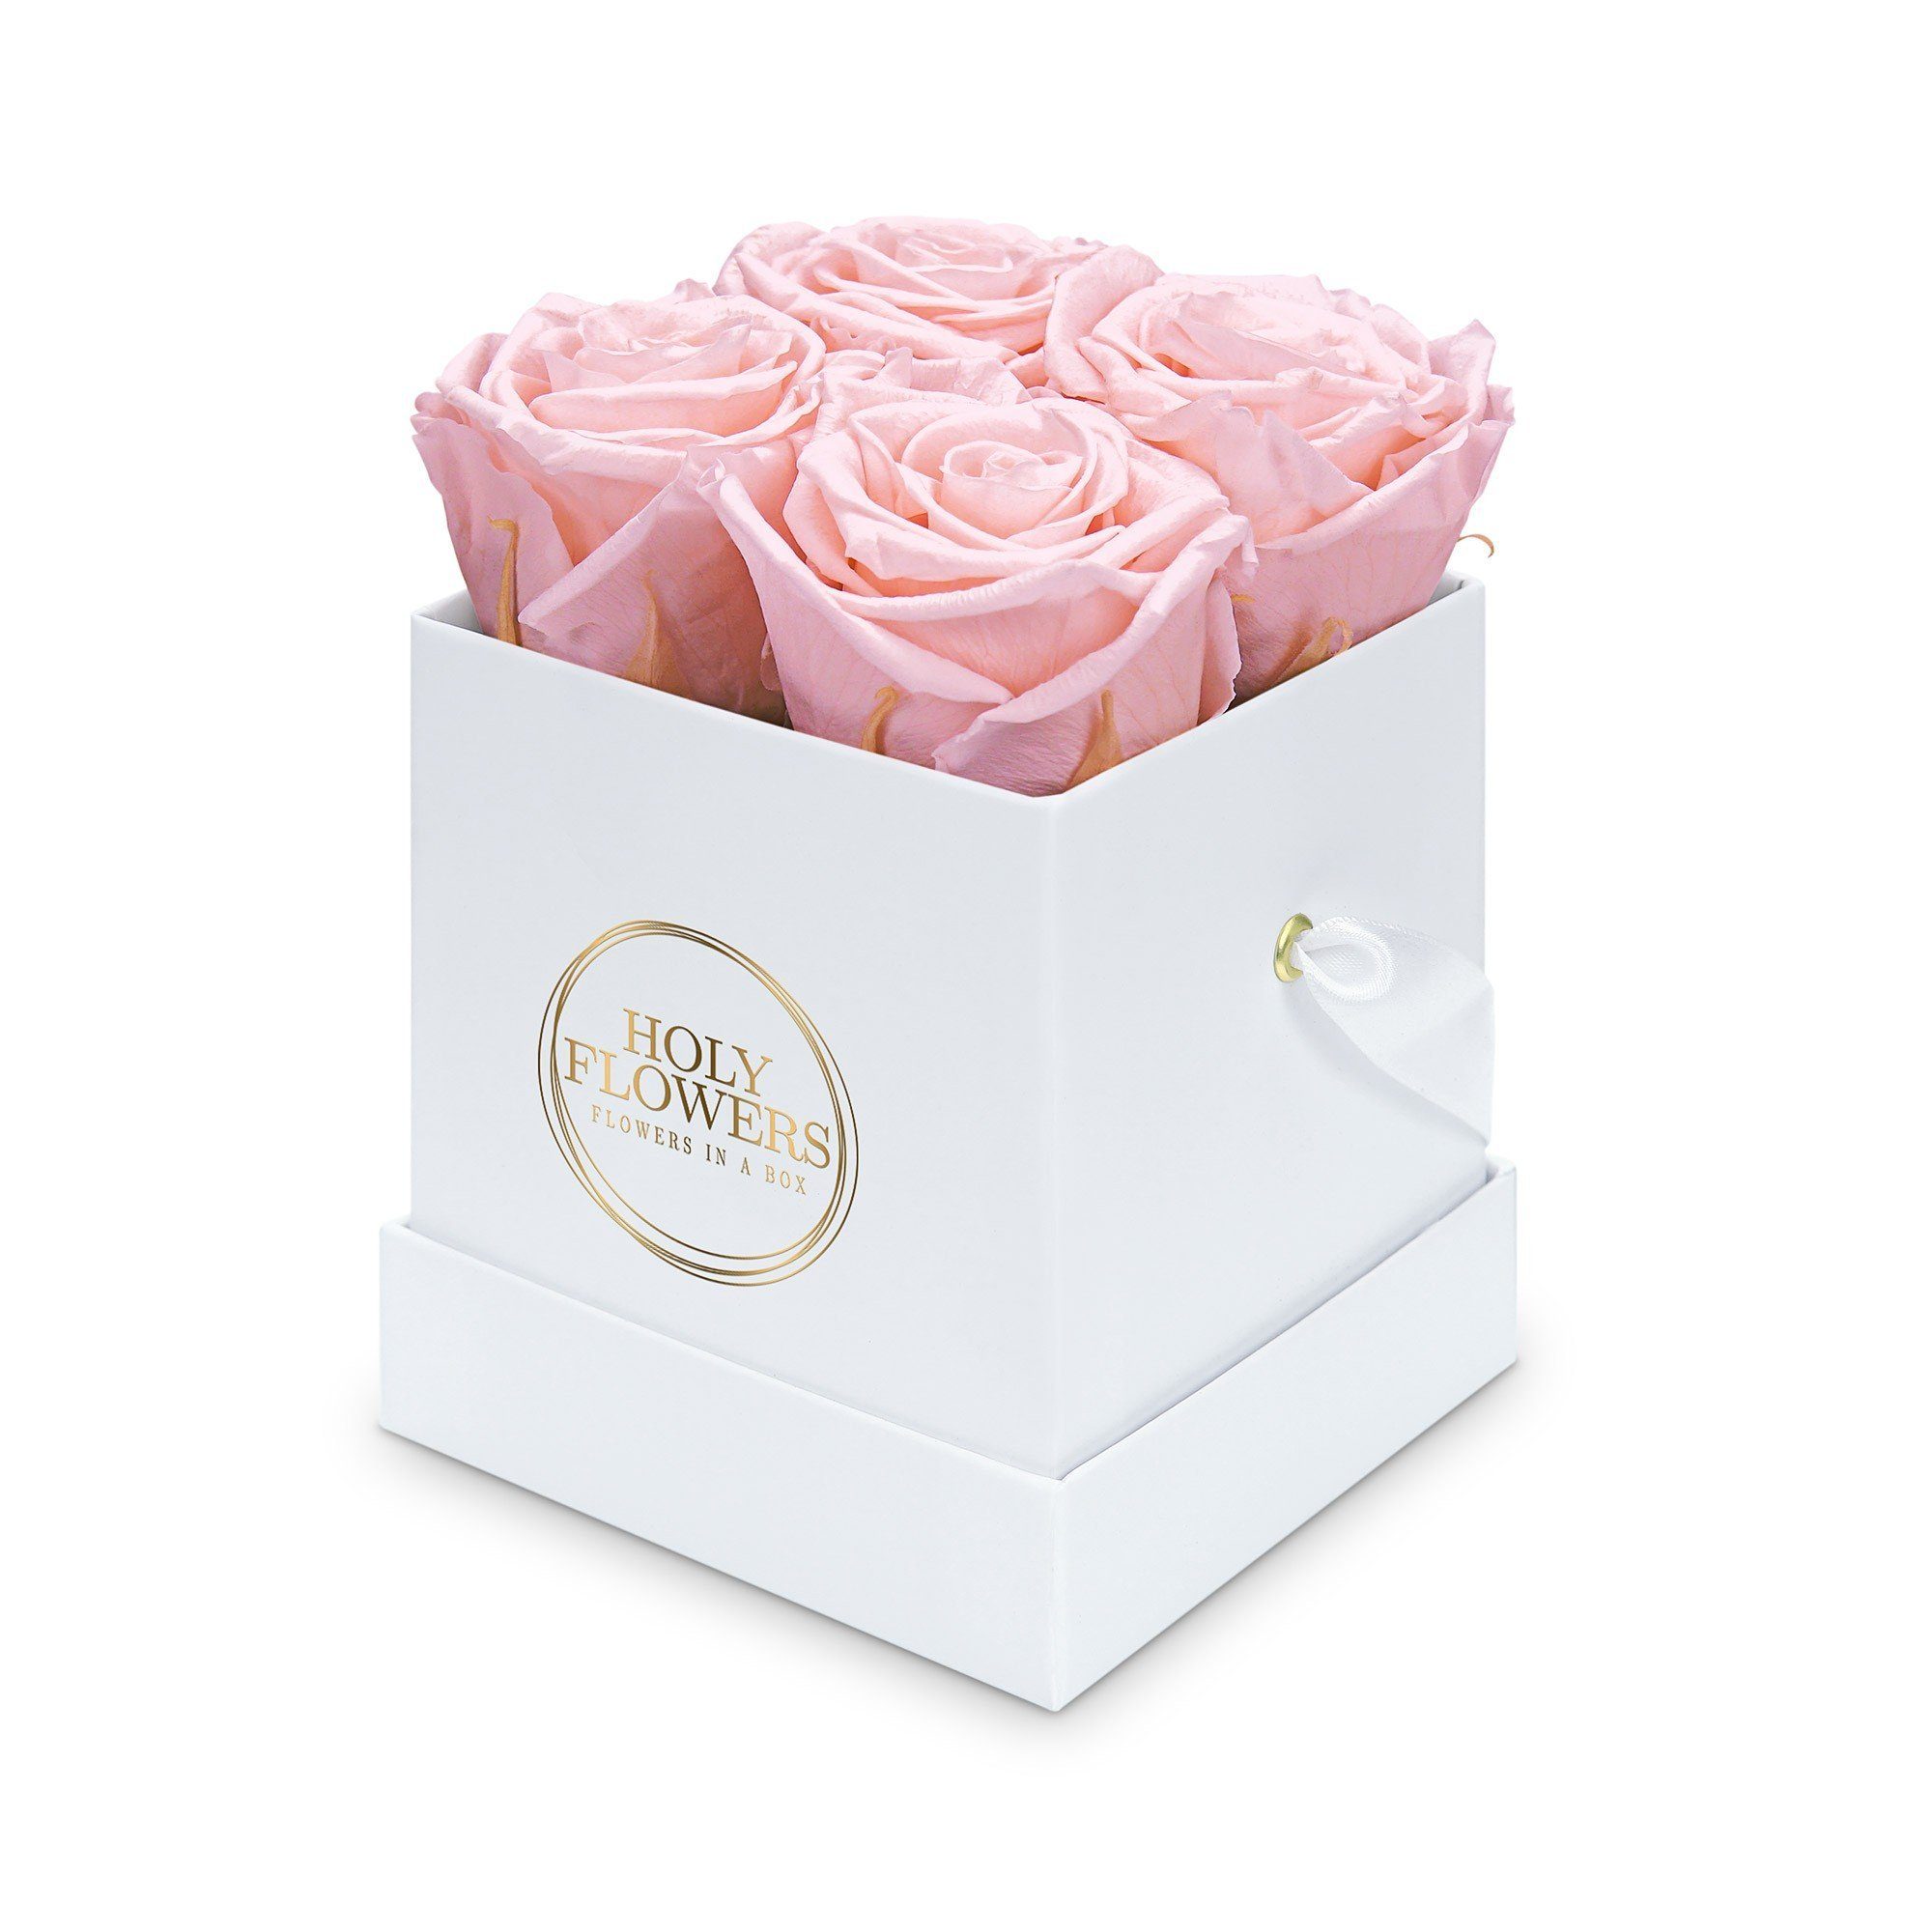 Kunstblume Eckige Rosenbox in weiß mit 4 Infinity Rosen I 3 Jahre haltbar I Echte, duftende konservierte Blumen I by Raul Richter Infinity Rose, Holy Flowers, Höhe 11 cm Pink Blush